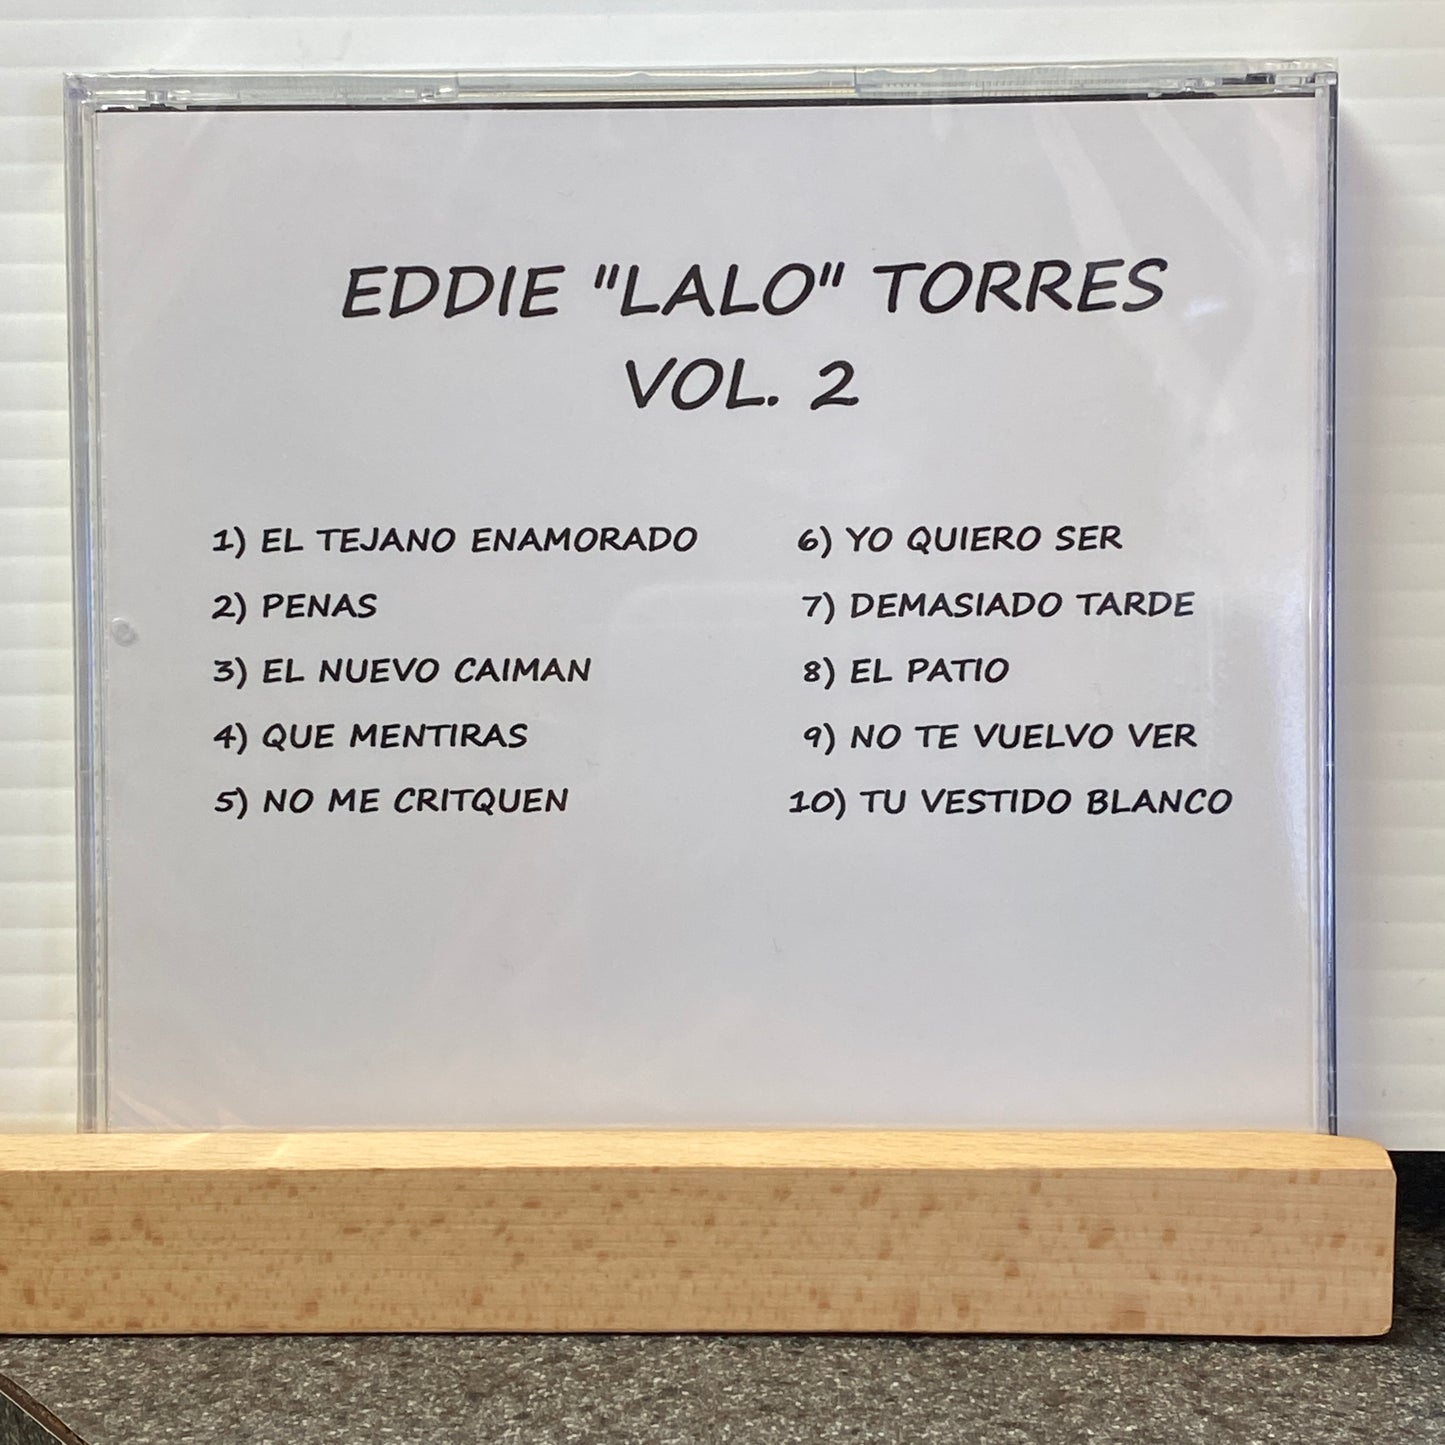 Eddie "Lalo" Torres - El Gigante De la Accordion Vol 2 (CD)